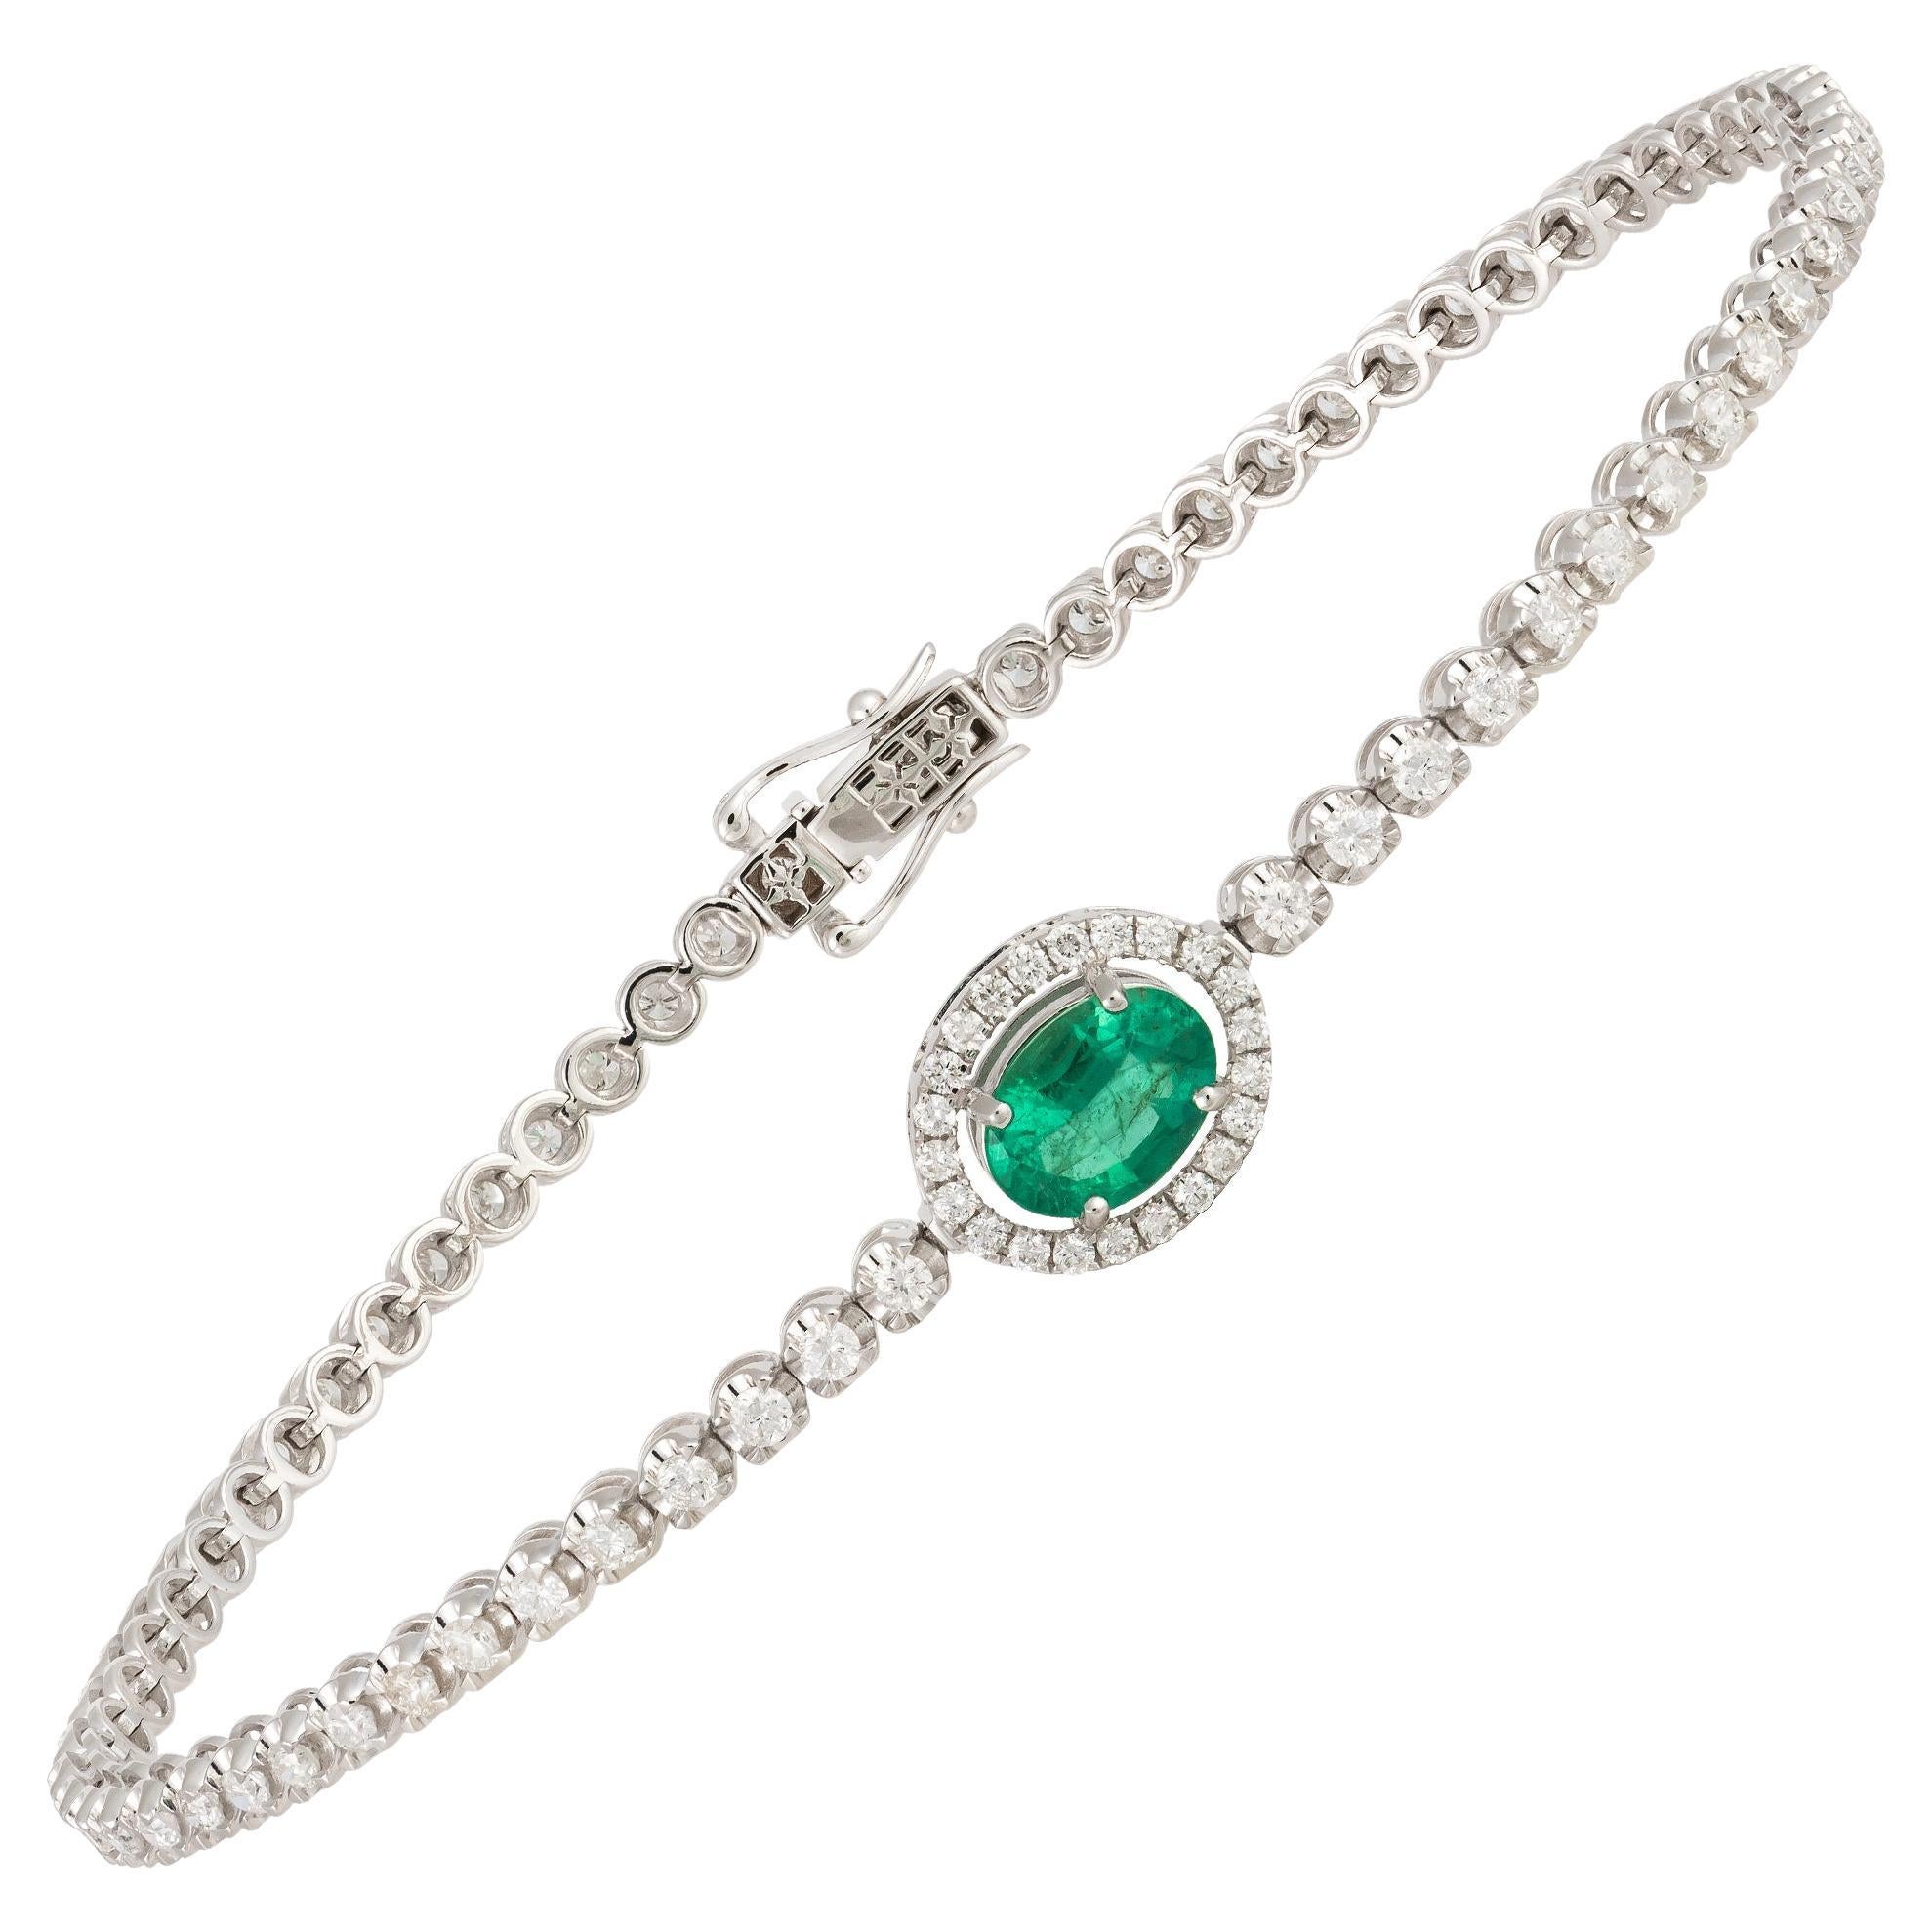 Designer White Gold 18K Emerald Bracelet Diamond for Her